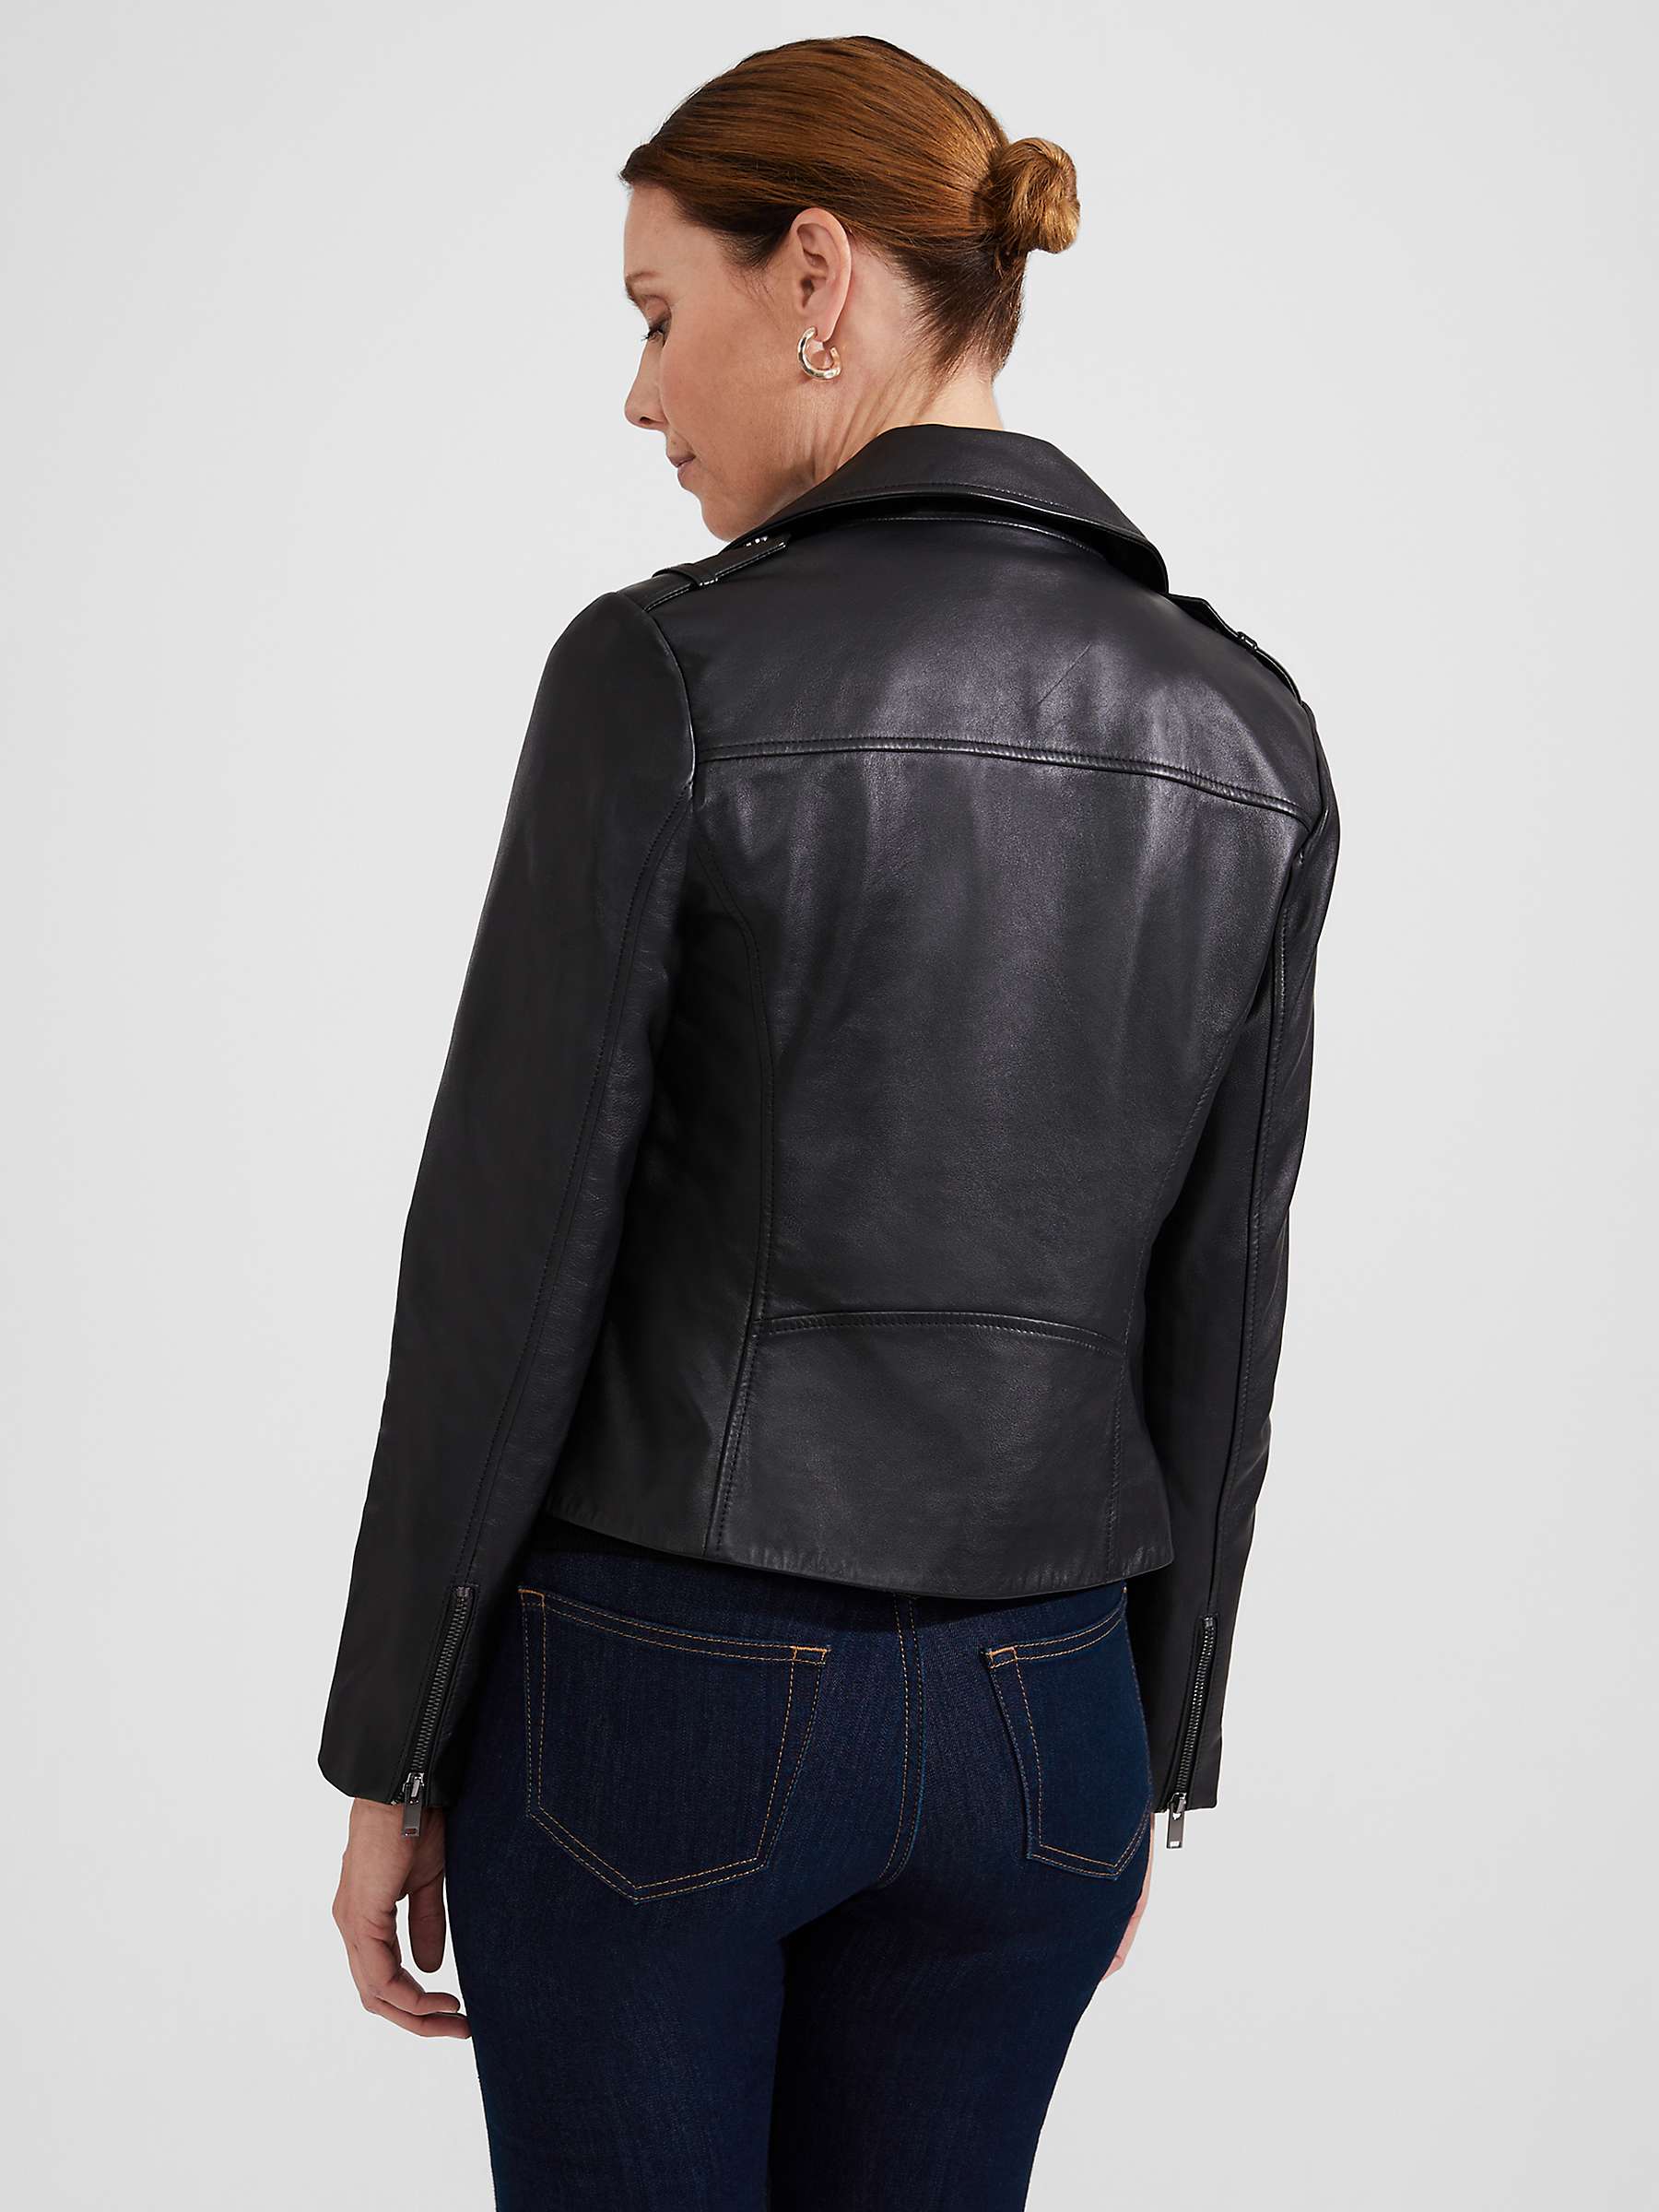 Buy Hobbs Darby Leather Jacket, Black Online at johnlewis.com